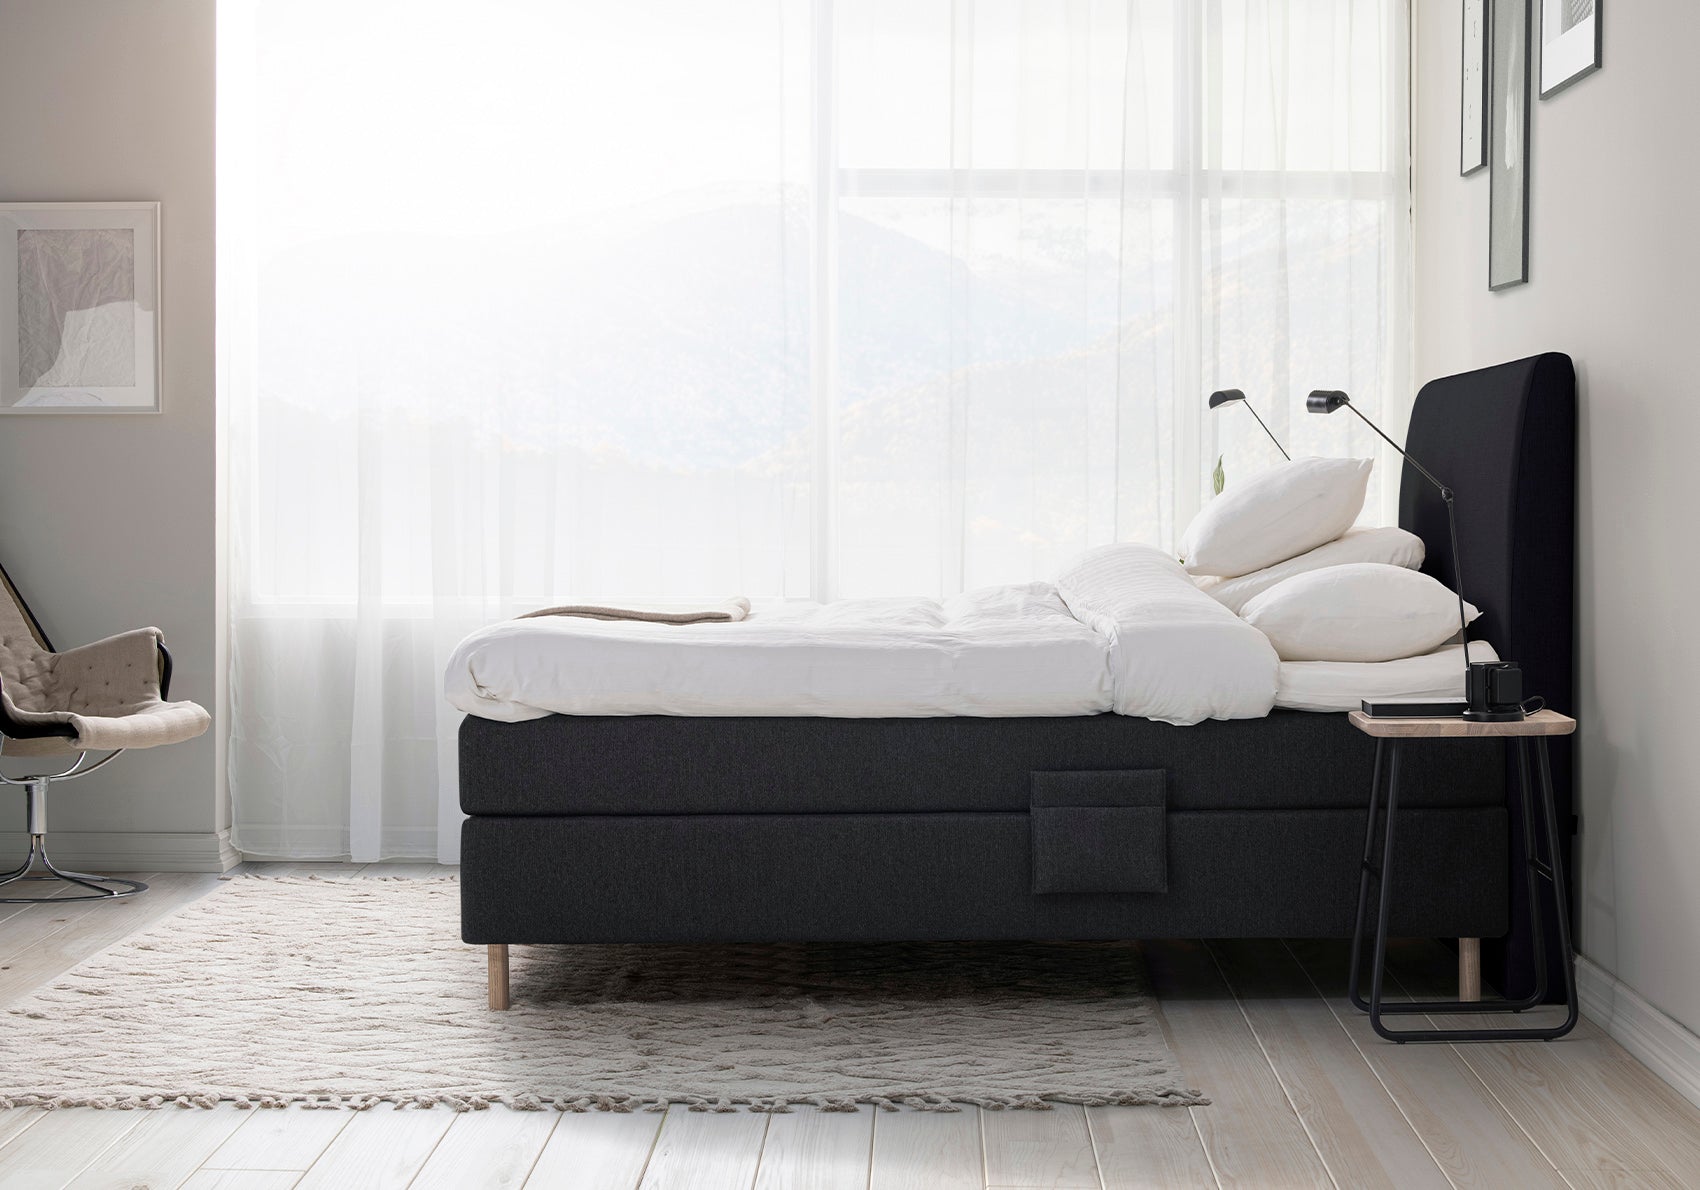 Jensen Diplomat Dream elevationsseng - soveværelse miljø - seng set fra siden